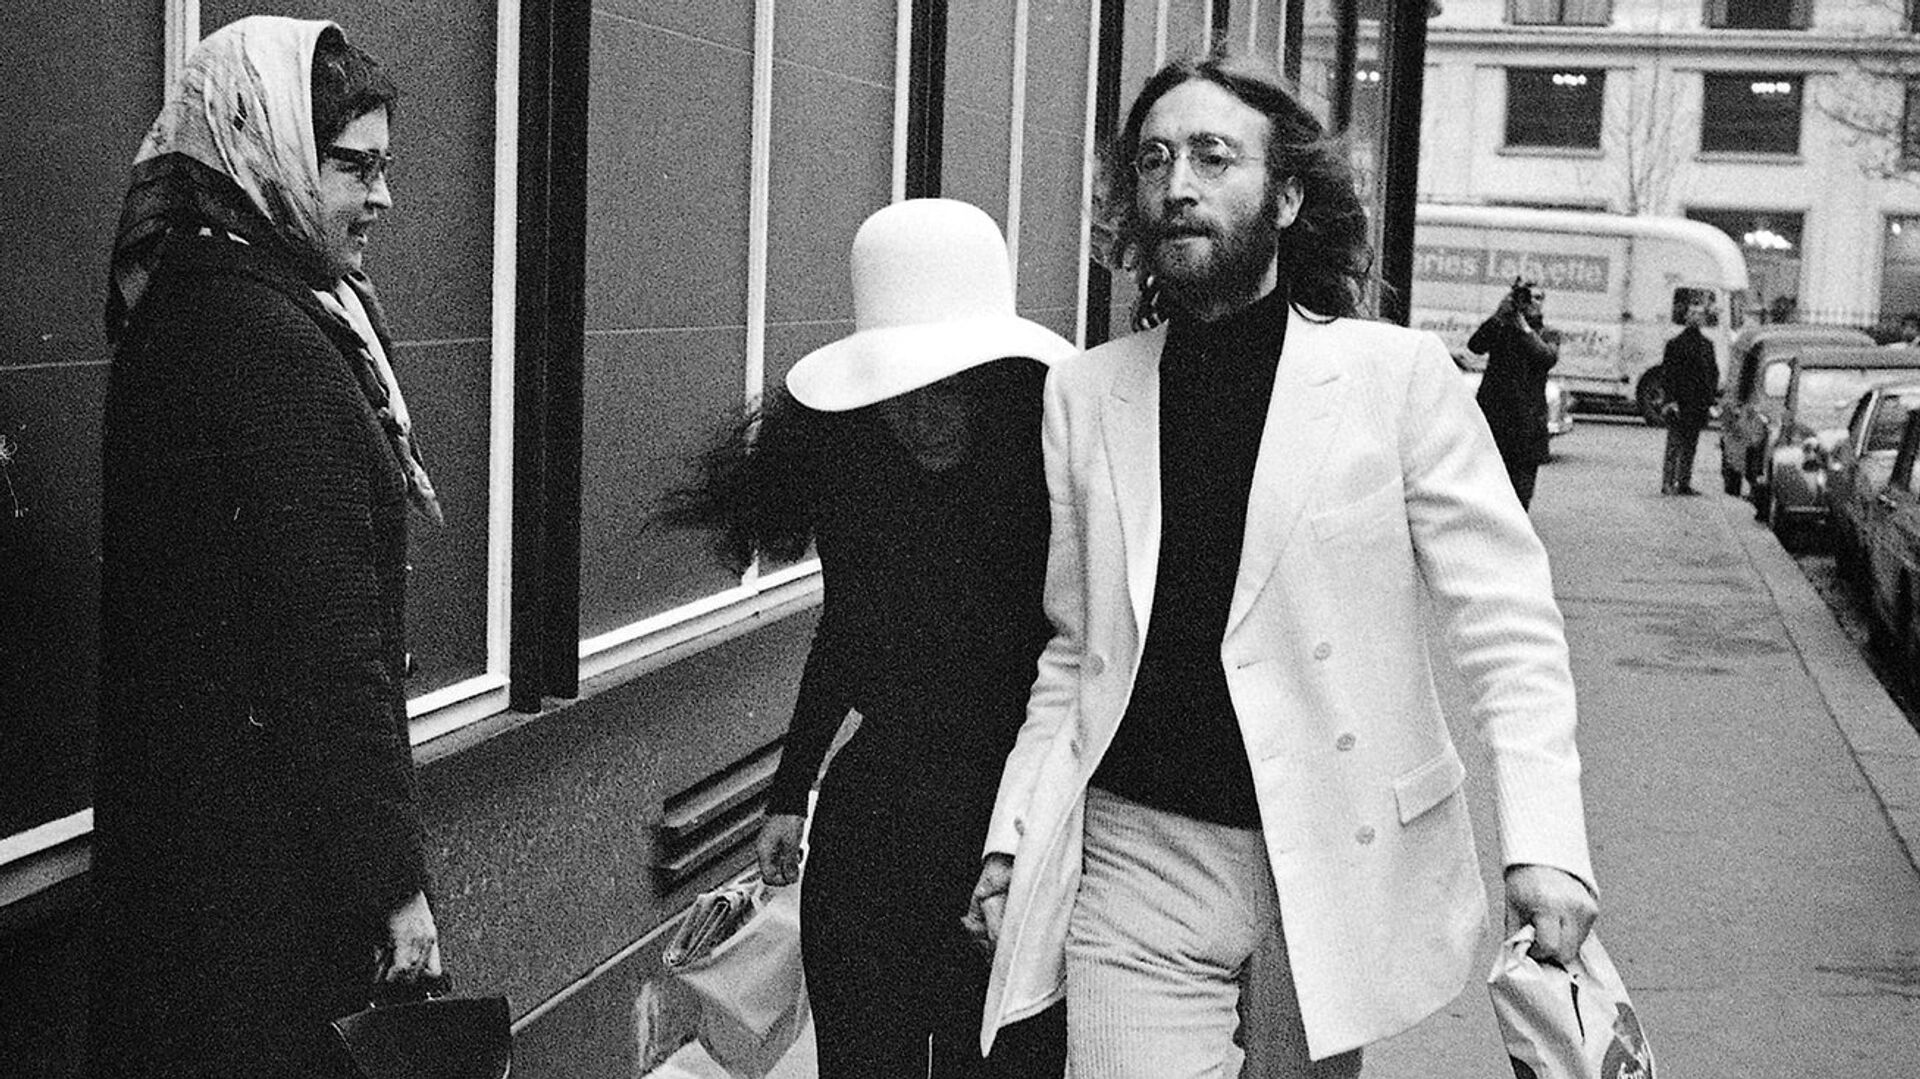 Джон Леннон и Йоко Оно на улице в Париже. 1969 год - РИА Новости, 1920, 09.10.2019